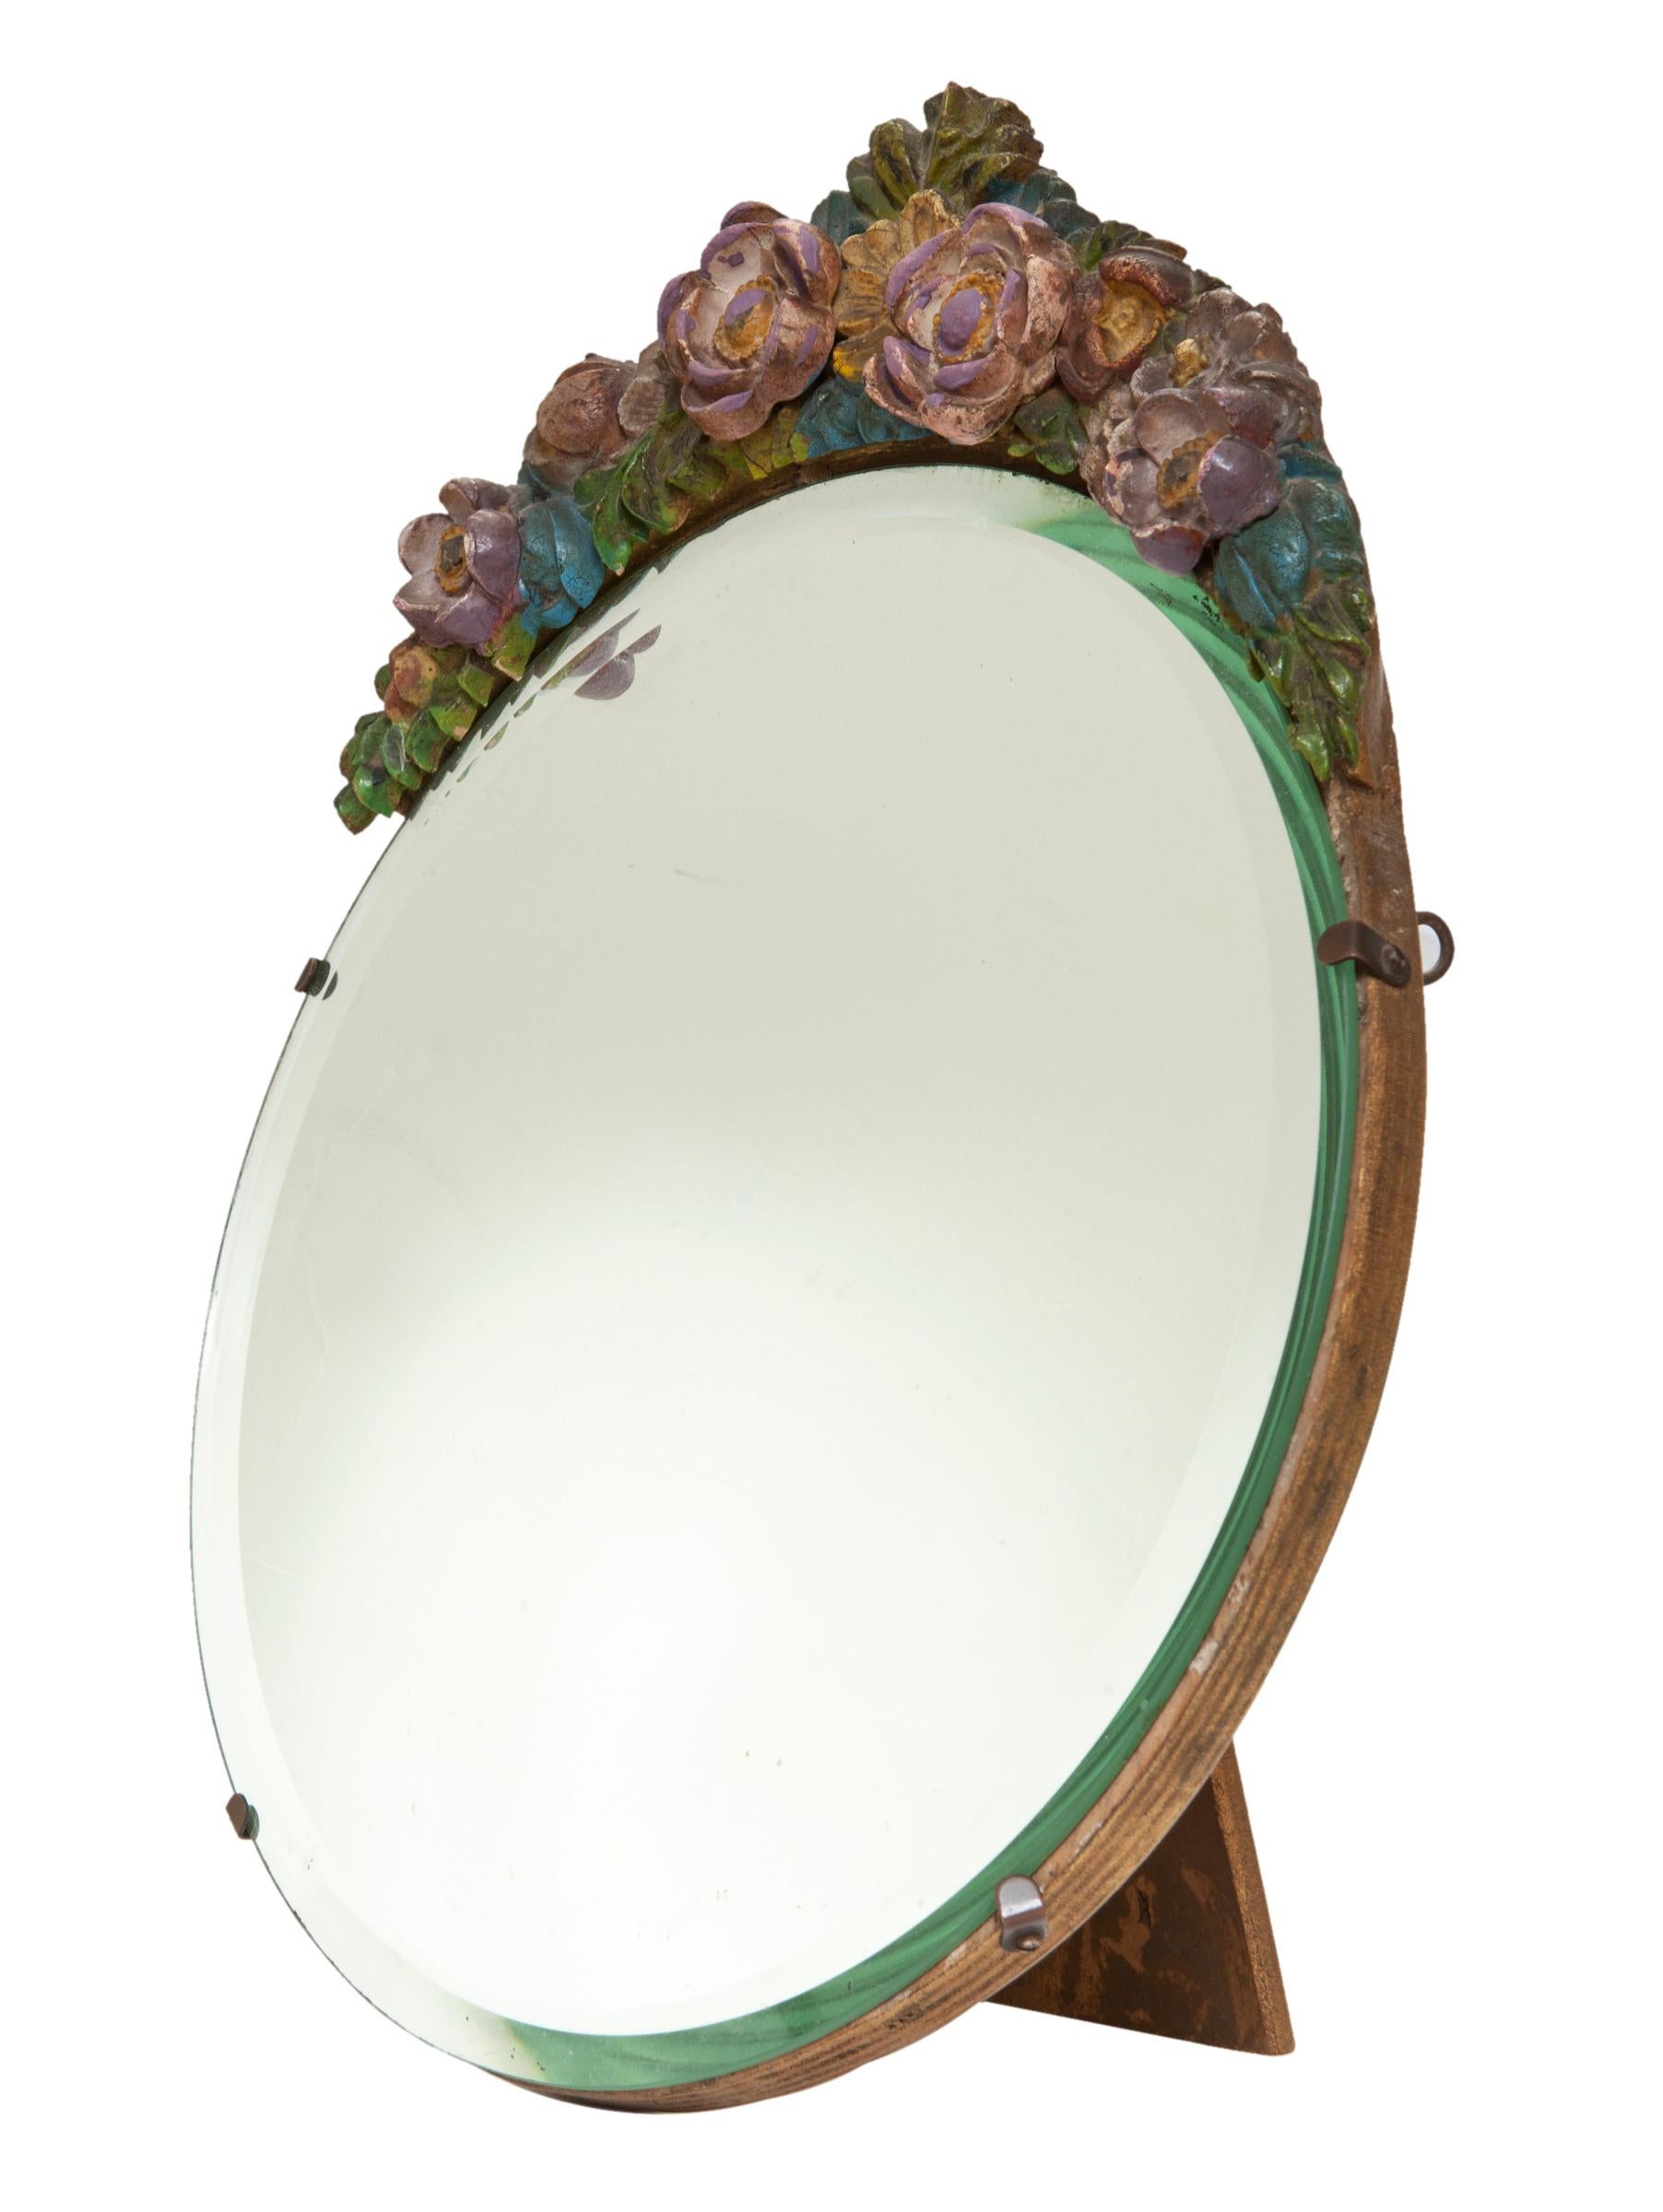 Miroir de table à chevalet des années 1930 avec couronne florale en sourdine.
Miroir de chevalet Barbola original avec un biseau étroit et un cadre en bois dur lourd. La finition peinte est d'origine,  peint aux couleurs de l'automne.